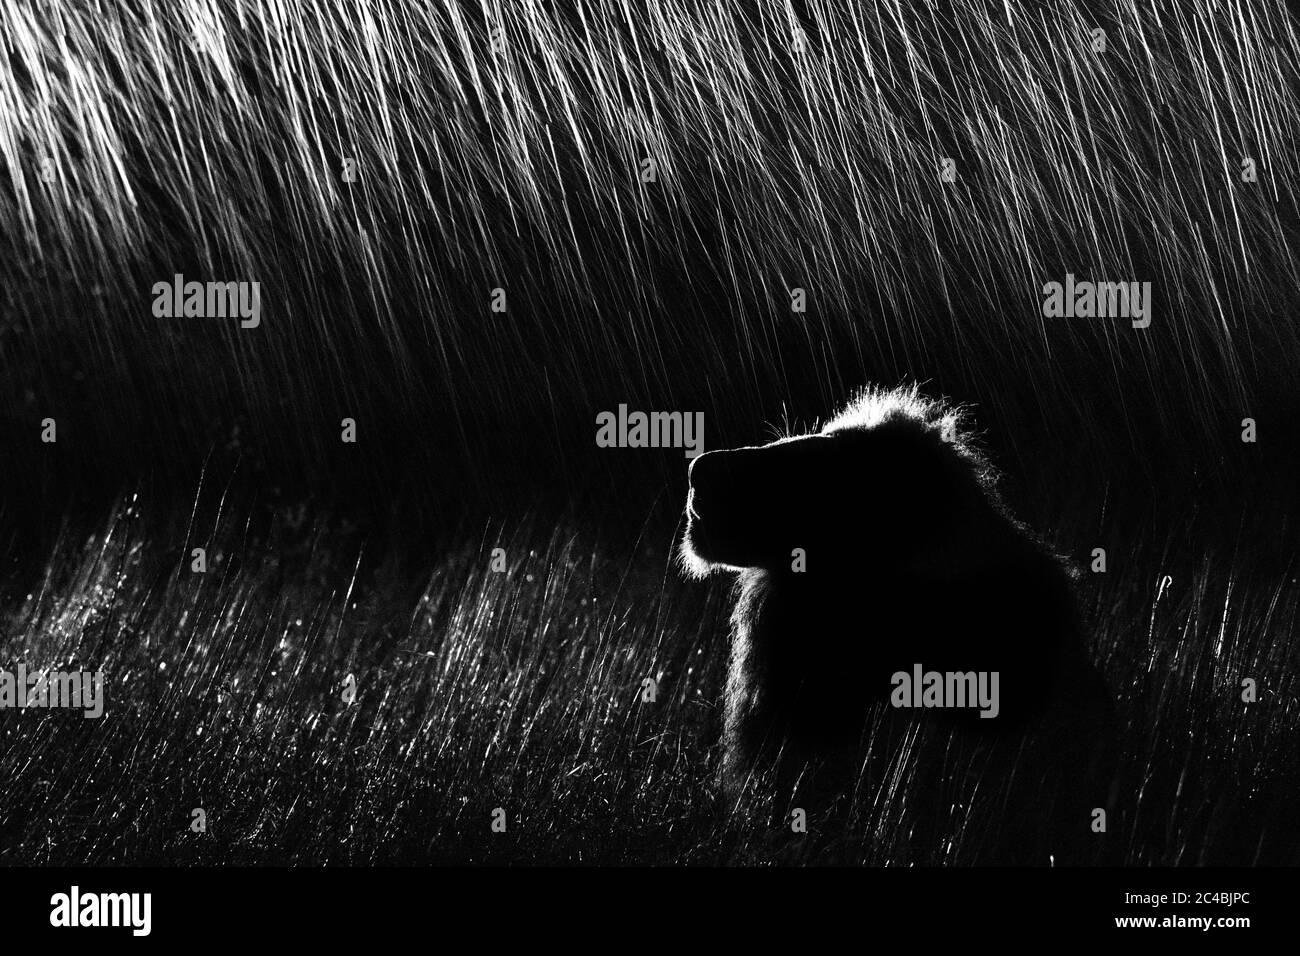 Ein Seitenprofil eines männlichen Löwen, Panthera leo, der in hohem Gras liegt und nachts aufschaut, beleuchtet von einem Scheinwerfer, in Schwarz und Weiß Stockfoto